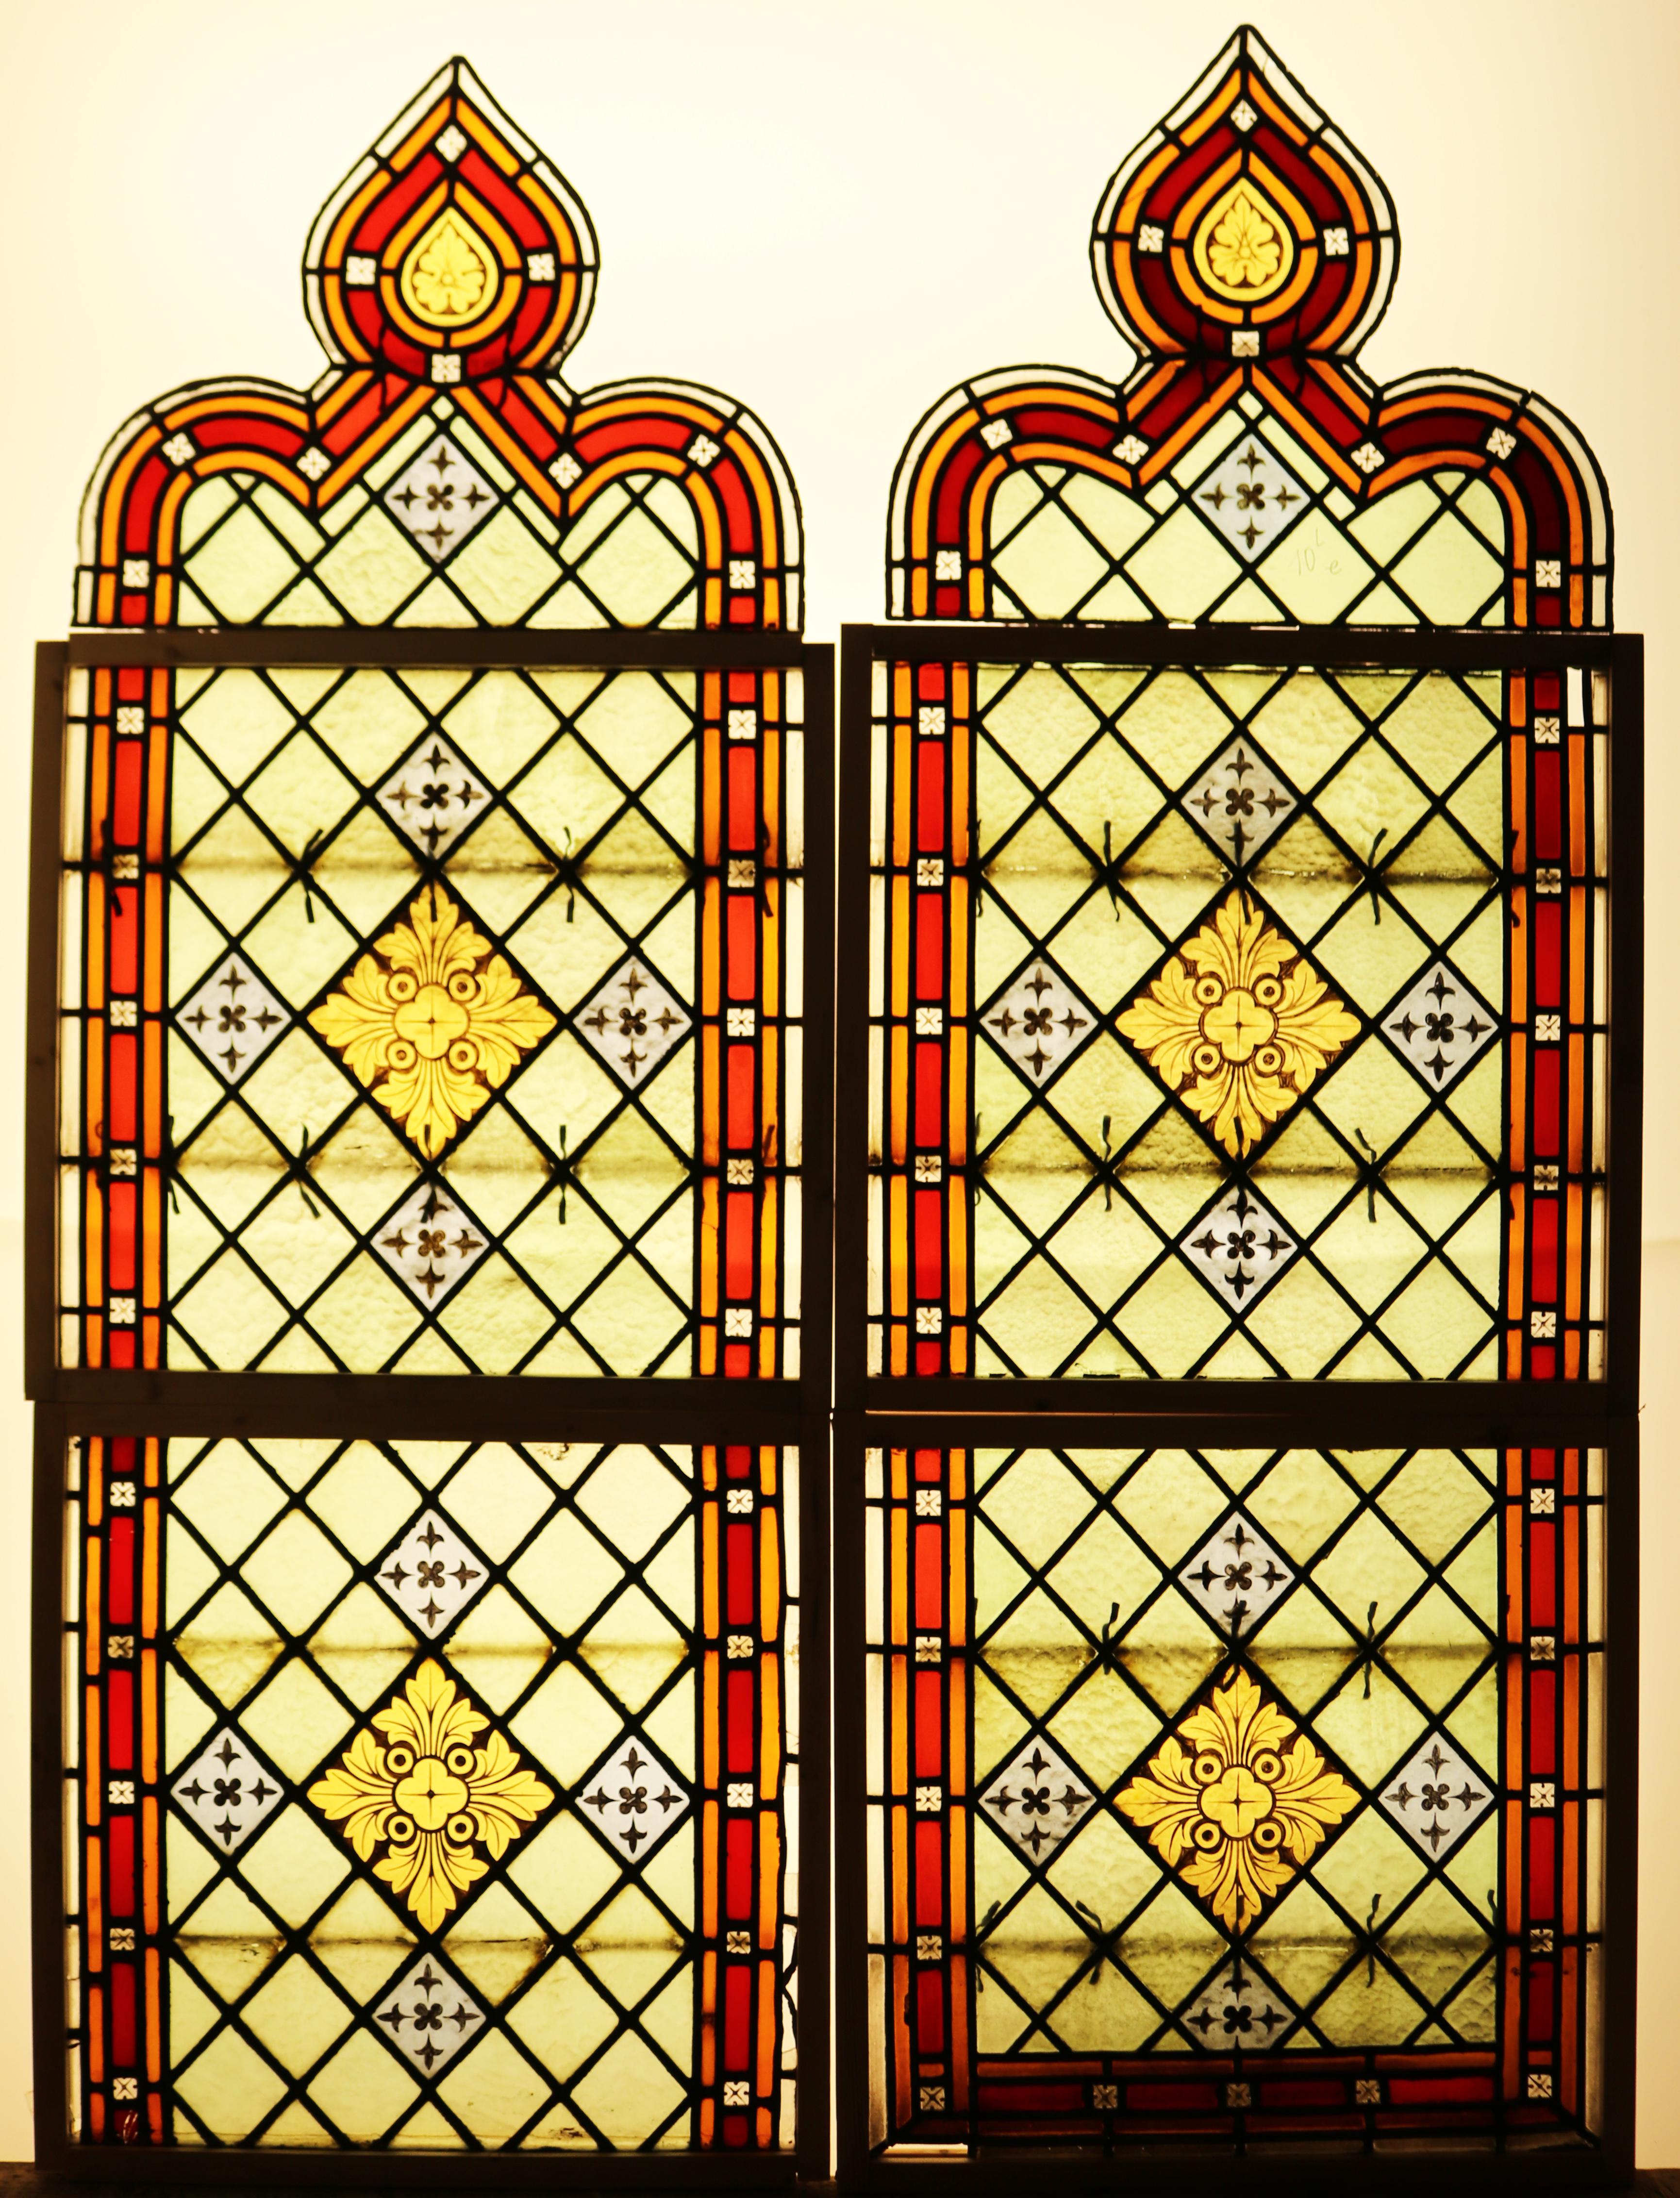 Zwei Kirchenfenster aus Glas, bestehend aus sechs Teilen, die in provisorischen Kiefernrahmen untergebracht sind.
 
Zusätzliche Abmessungen:
 
Insgesamt 197 x 145 x 1 cm
 
2 x oben 55 x 67 x 1 cm
 
4 x 69 x  72,5 x 1 cm